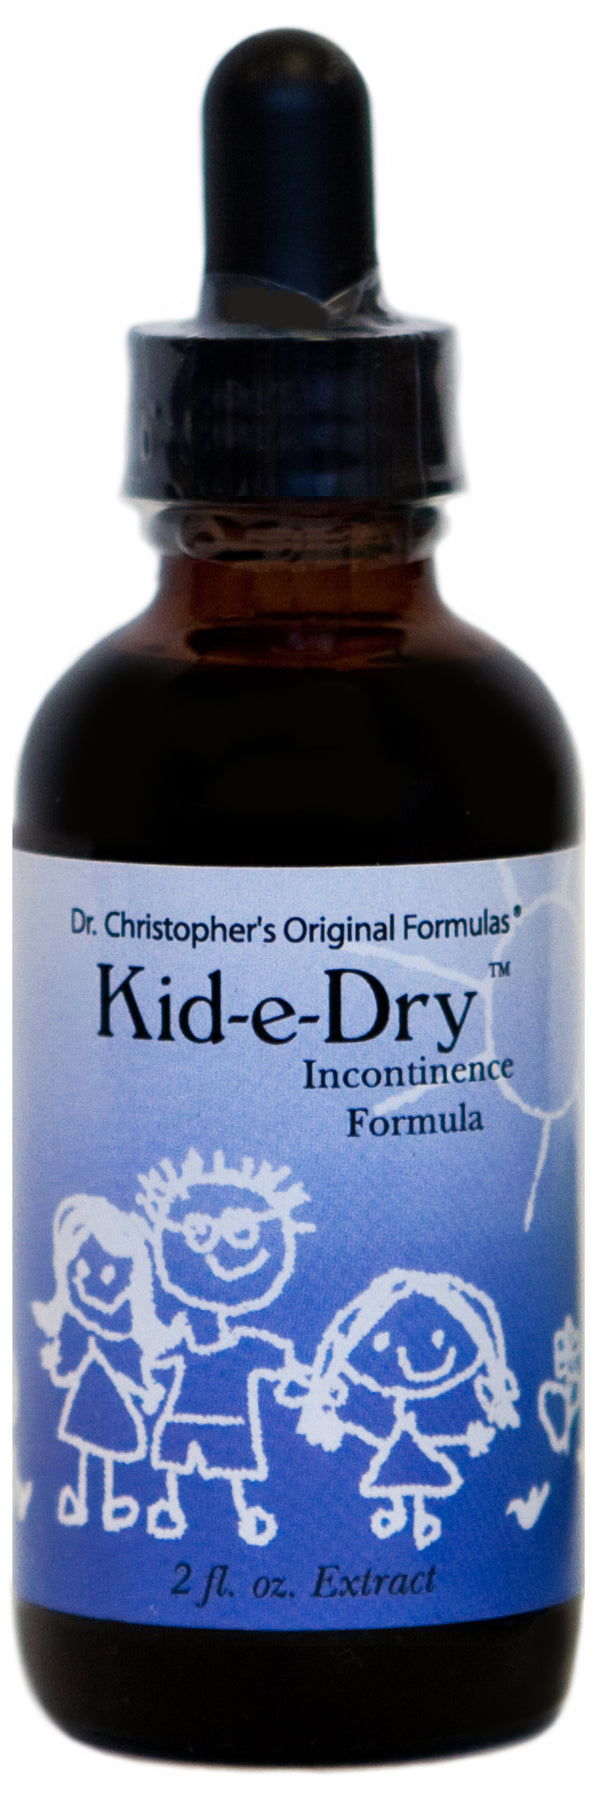 Kid-e-Dry 2 oz